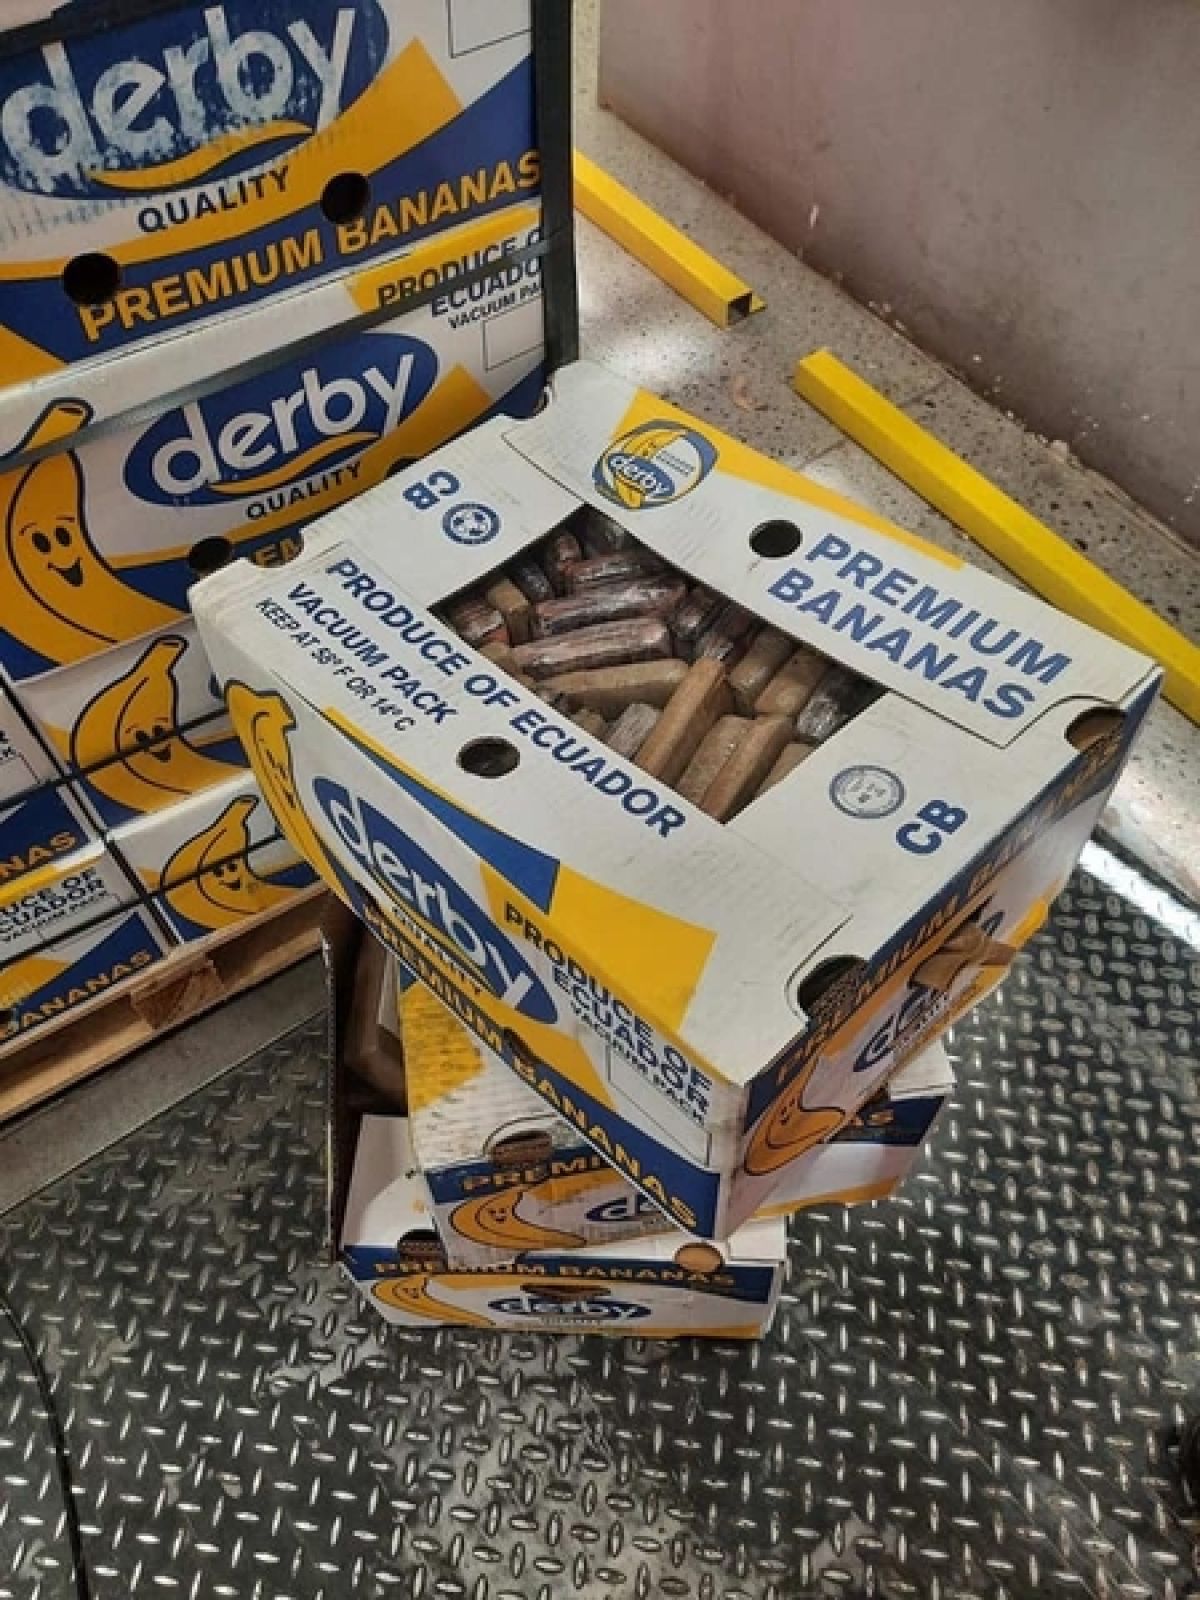 Radnici “Volija” pronašli nepoznatu supstancu u paketu sa bananama, sumnja se na kokain